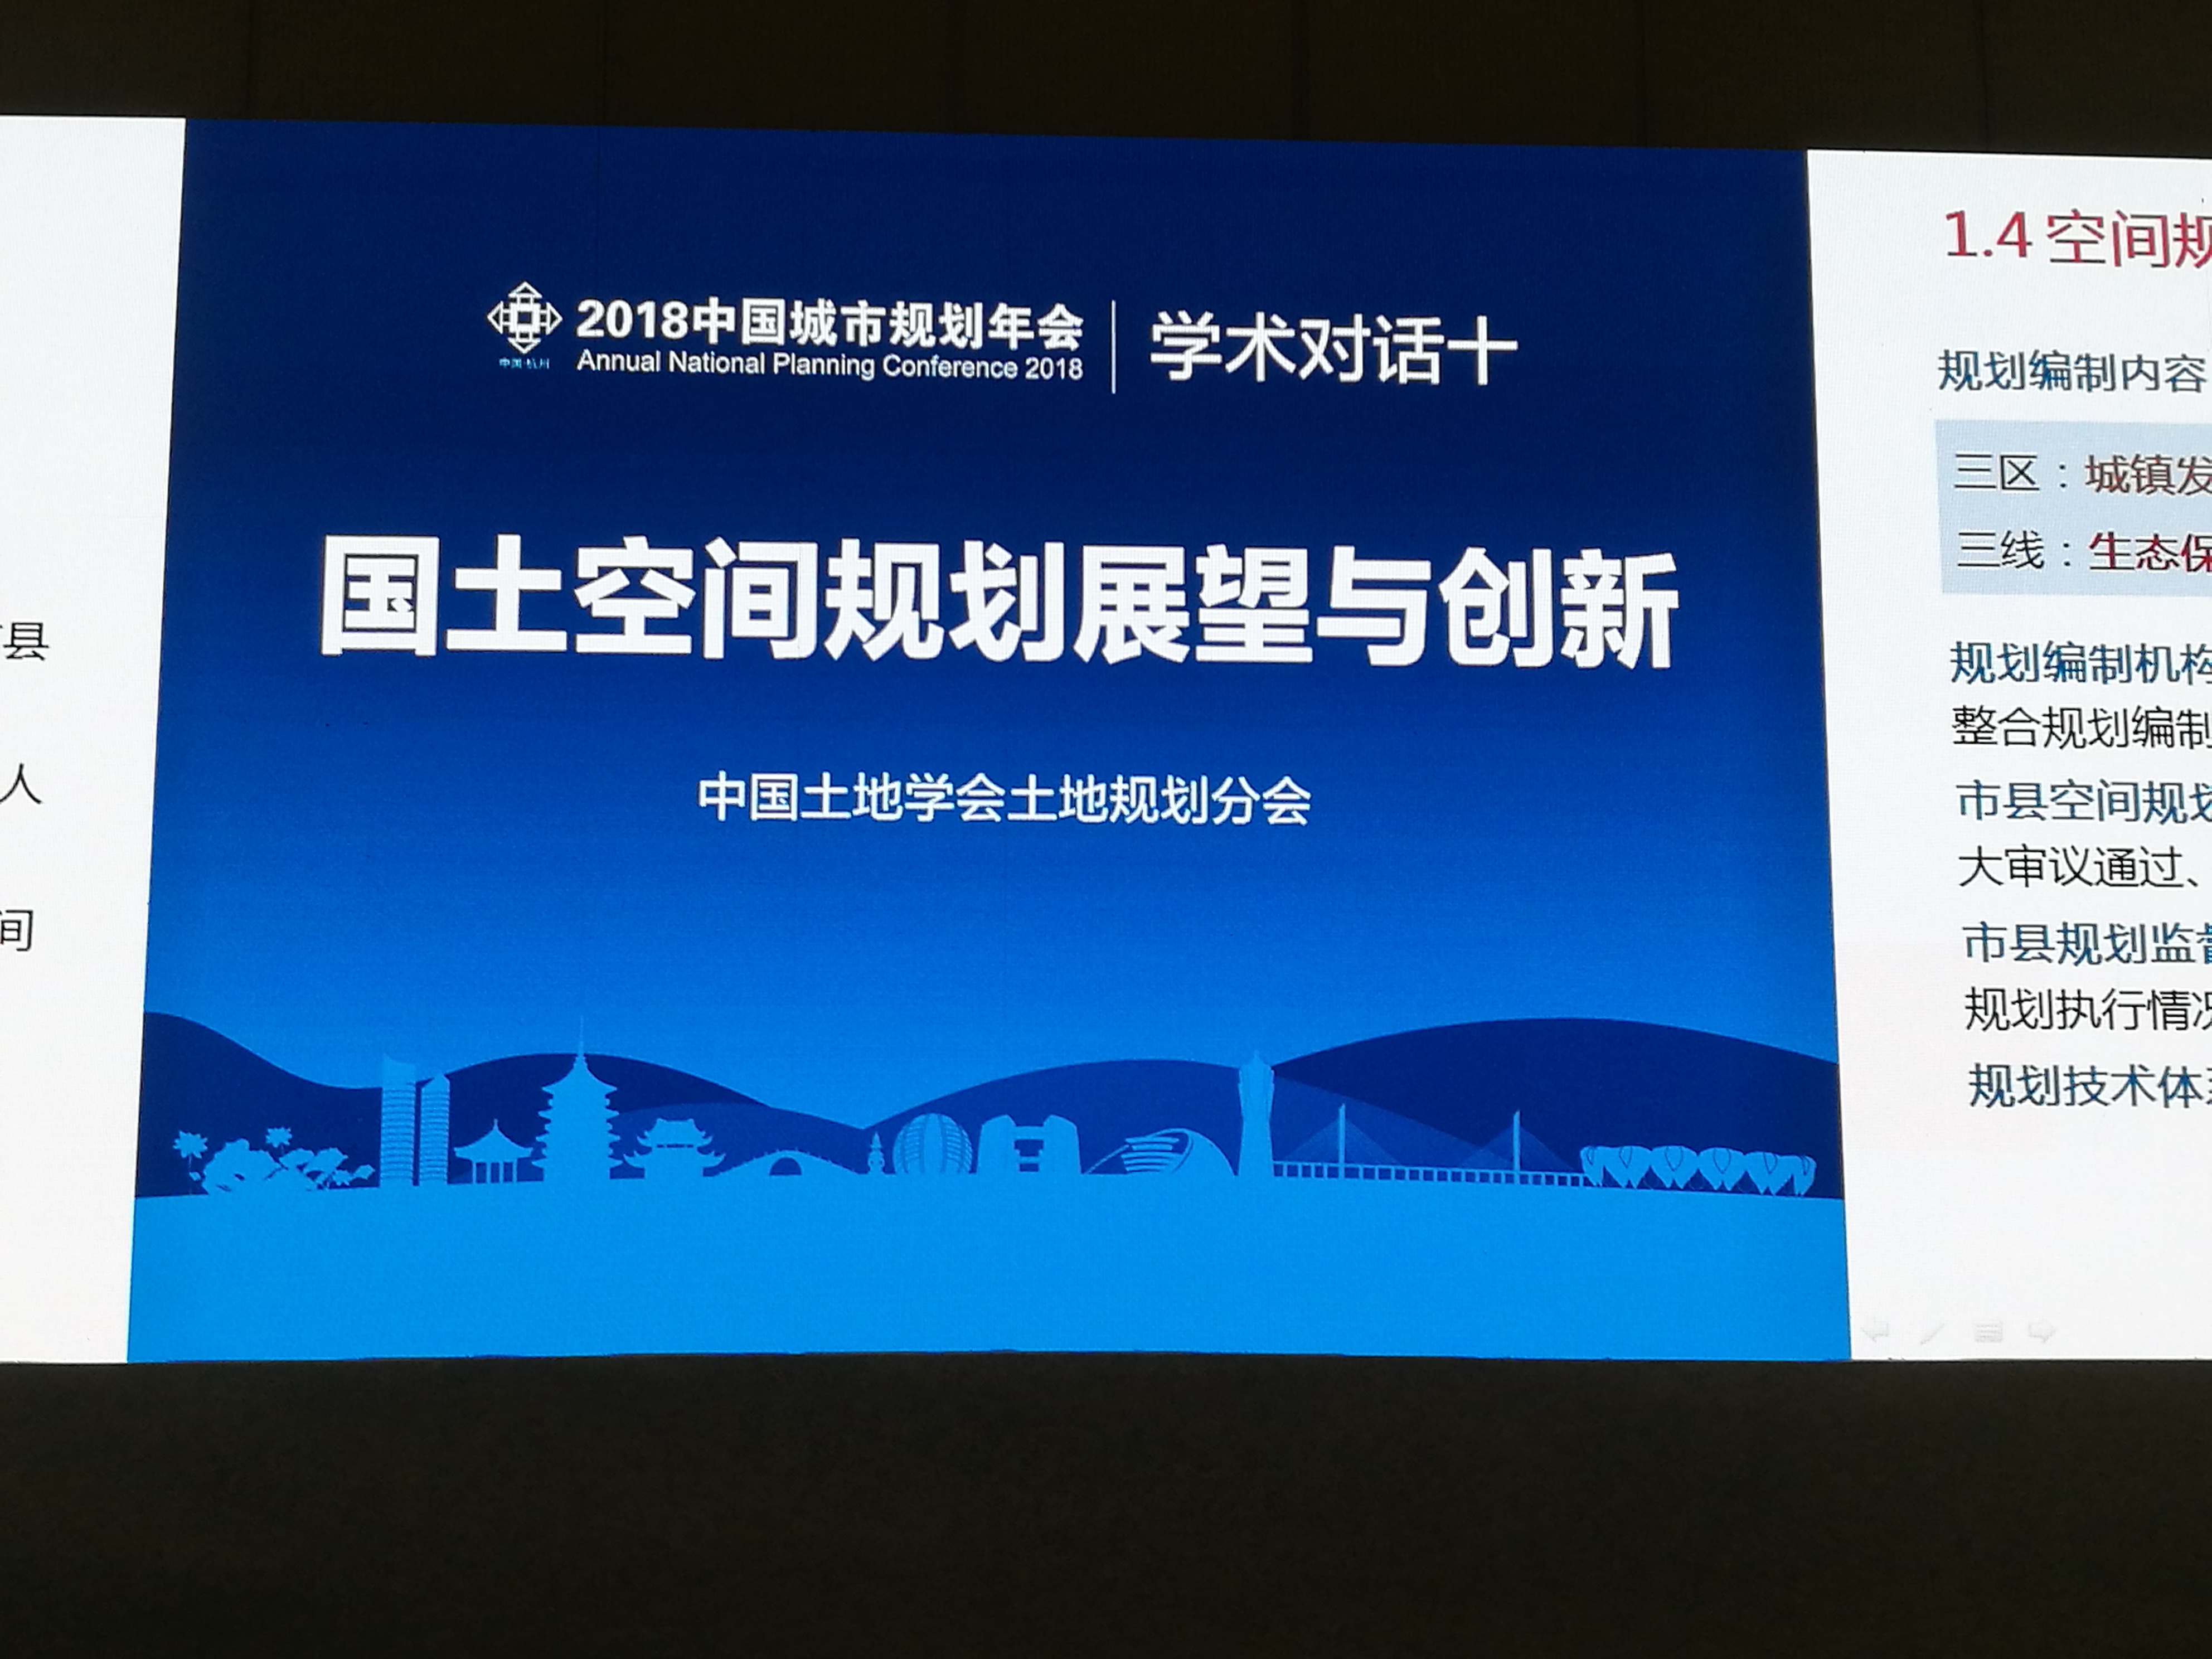 [2018中国城市规划年会] 学术对话十：国土空间规划展望与创新